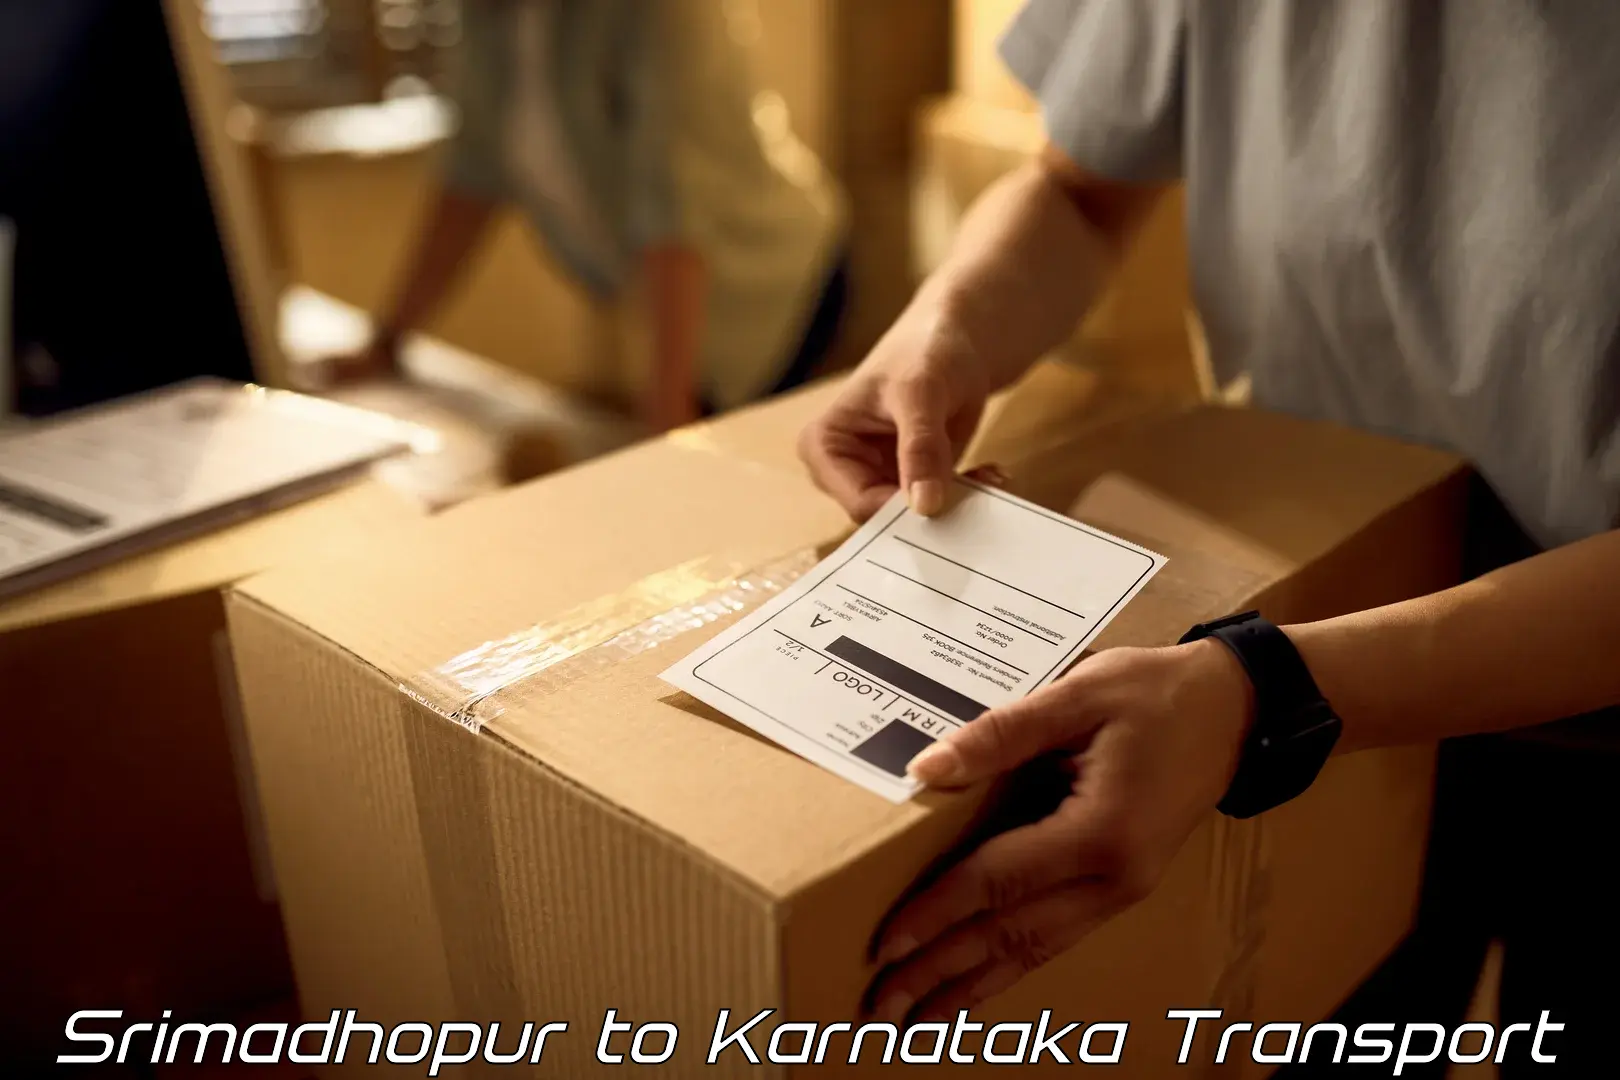 Luggage transport services Srimadhopur to Kalaburagi